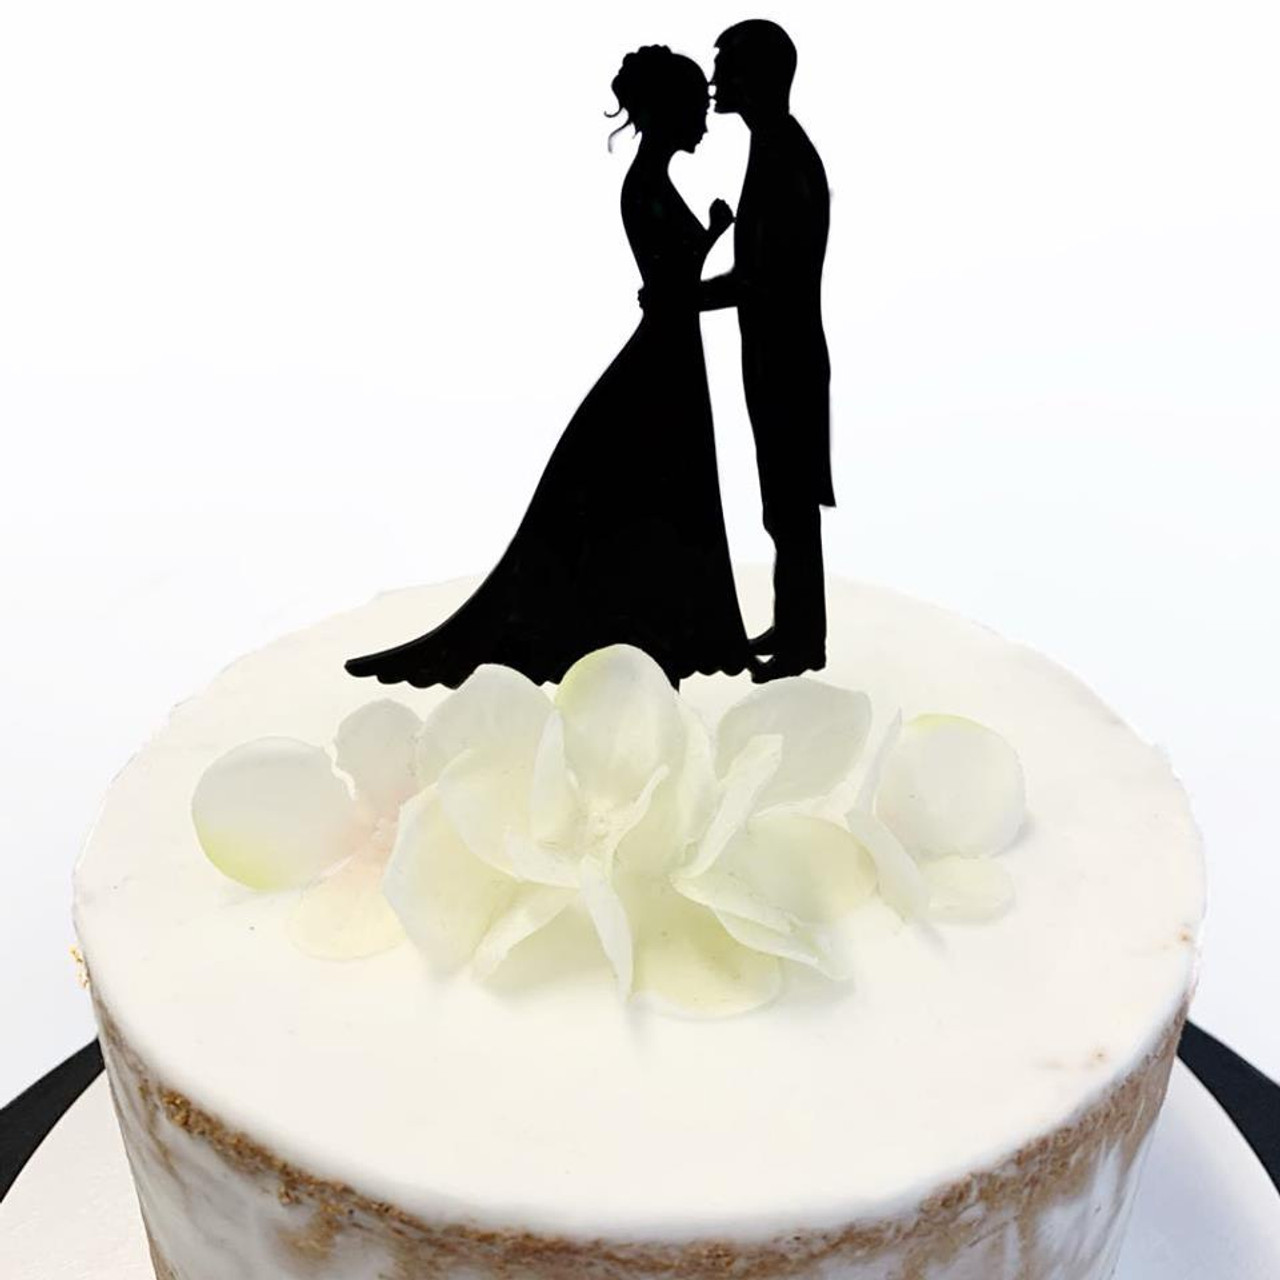 11 Imaginative & Simple Wedding Cake Design Ideas